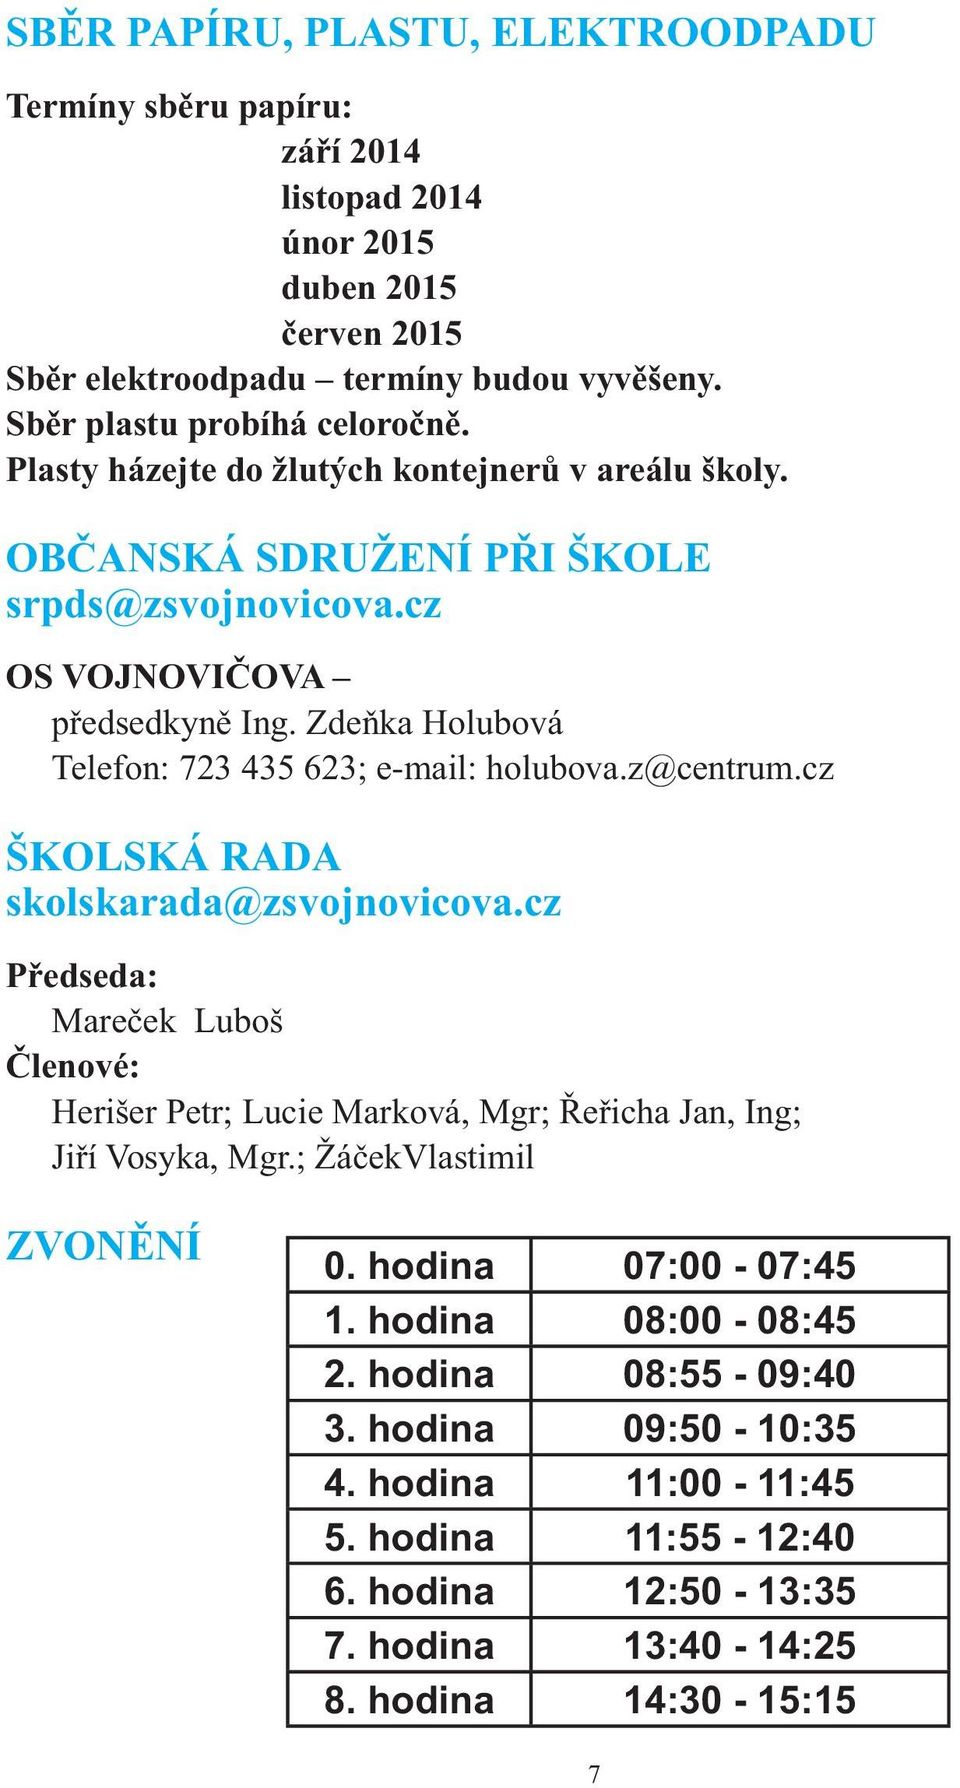 Zdeňka Holubová Telefon: 723 435 623; e-mail: holubova.z@centrum.cz ŠKOLSKÁ RADA skolskarada@zsvojnovicova.